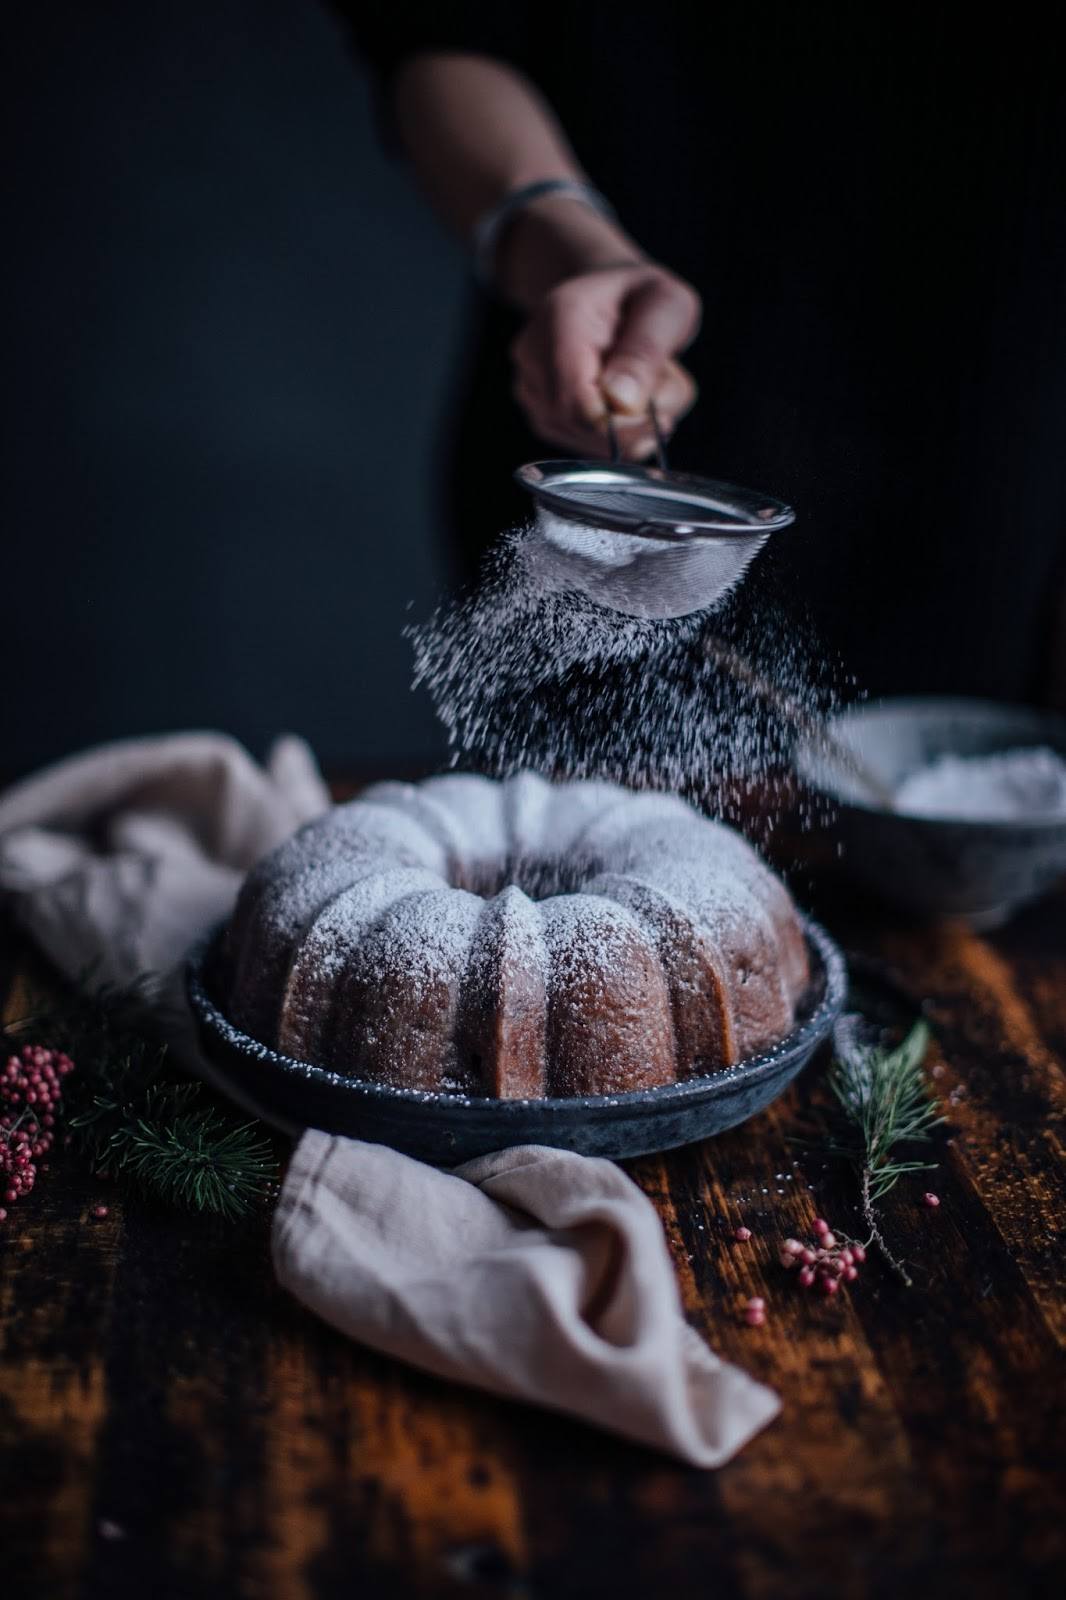 Gluten-free Christmas “Stollen” – Bundt Cake